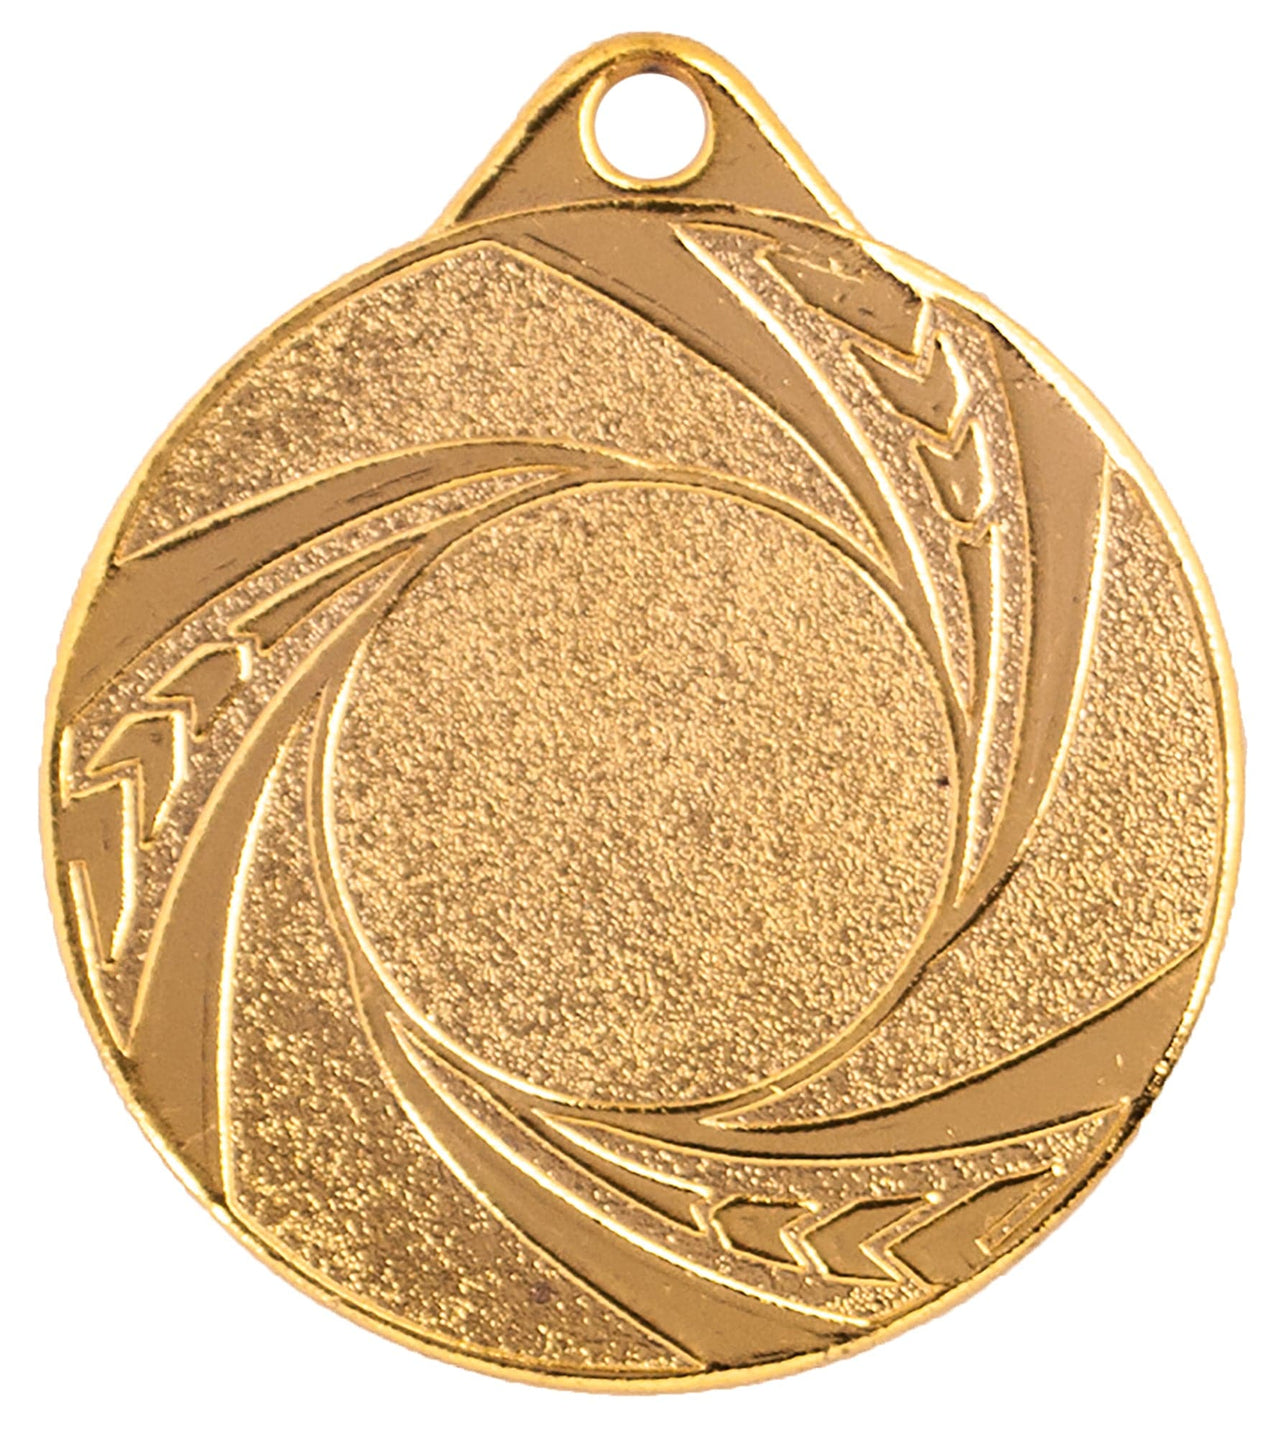 Goldmedaille Medaillen Iserlohn 50 mm PK79313g-E25 mit leerem Zentrum als Erinnerungsstück und dekorativem Rand.